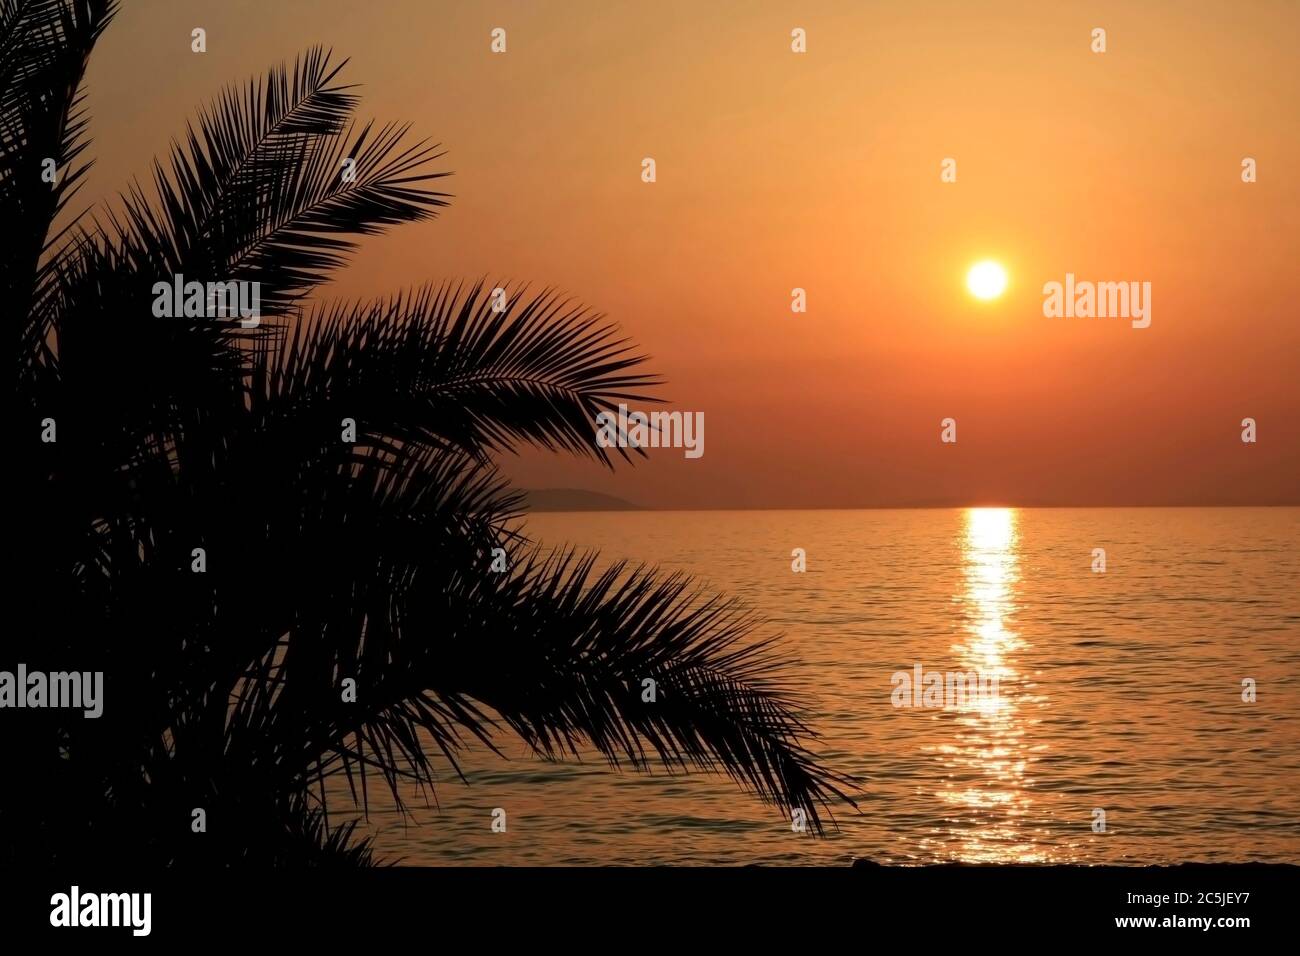 Silueta de la palma frente a la puesta de sol del adriático Foto de stock